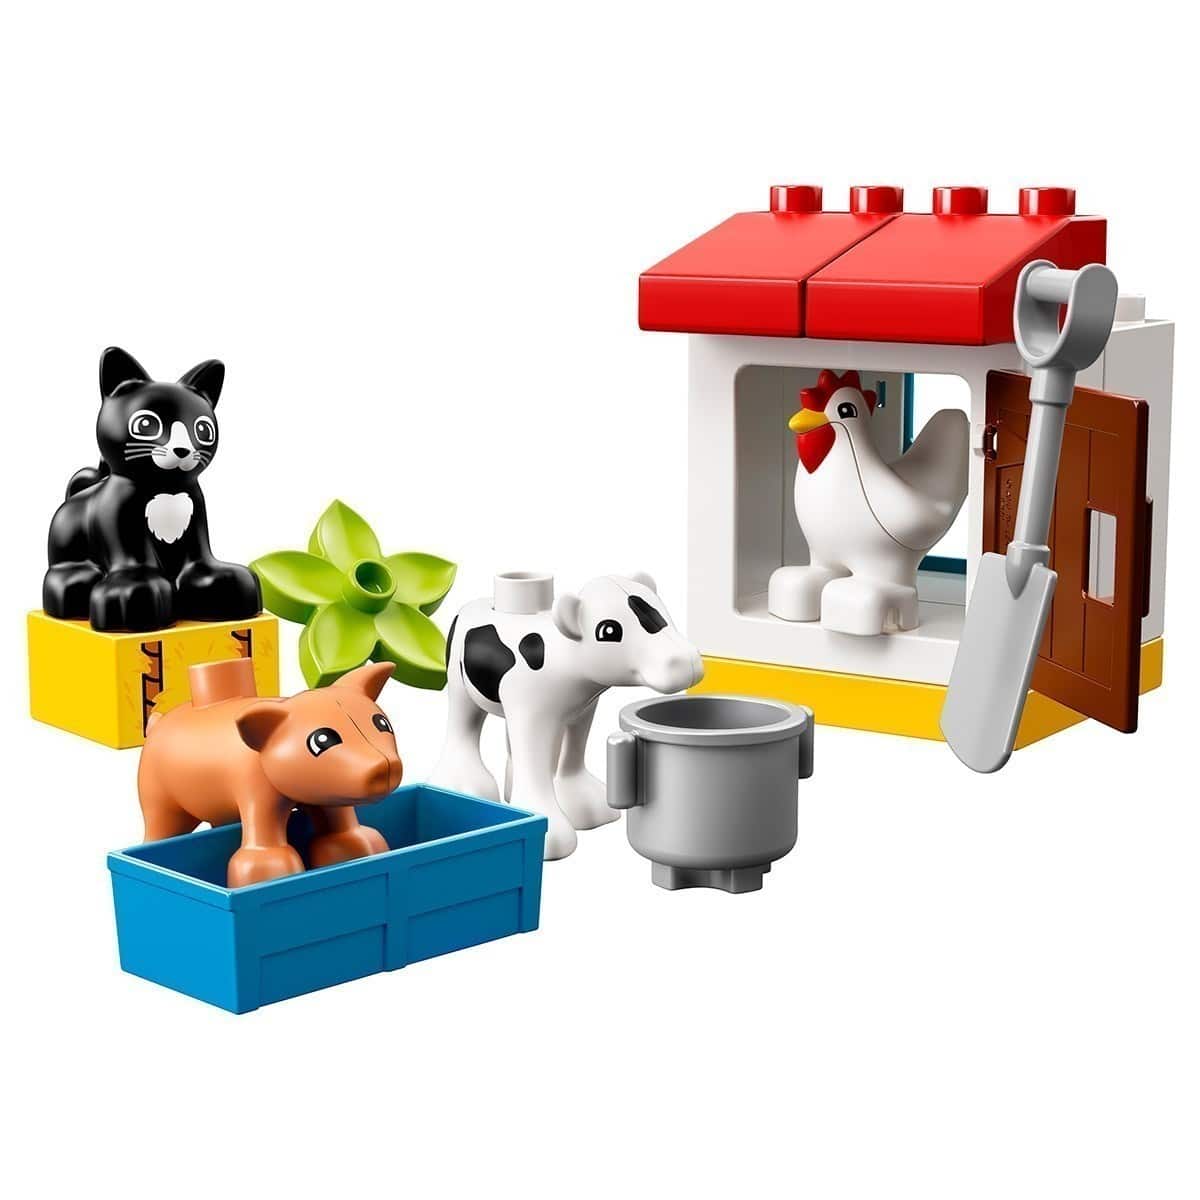 LEGO® DUPLO® 10870 - Farm Animals